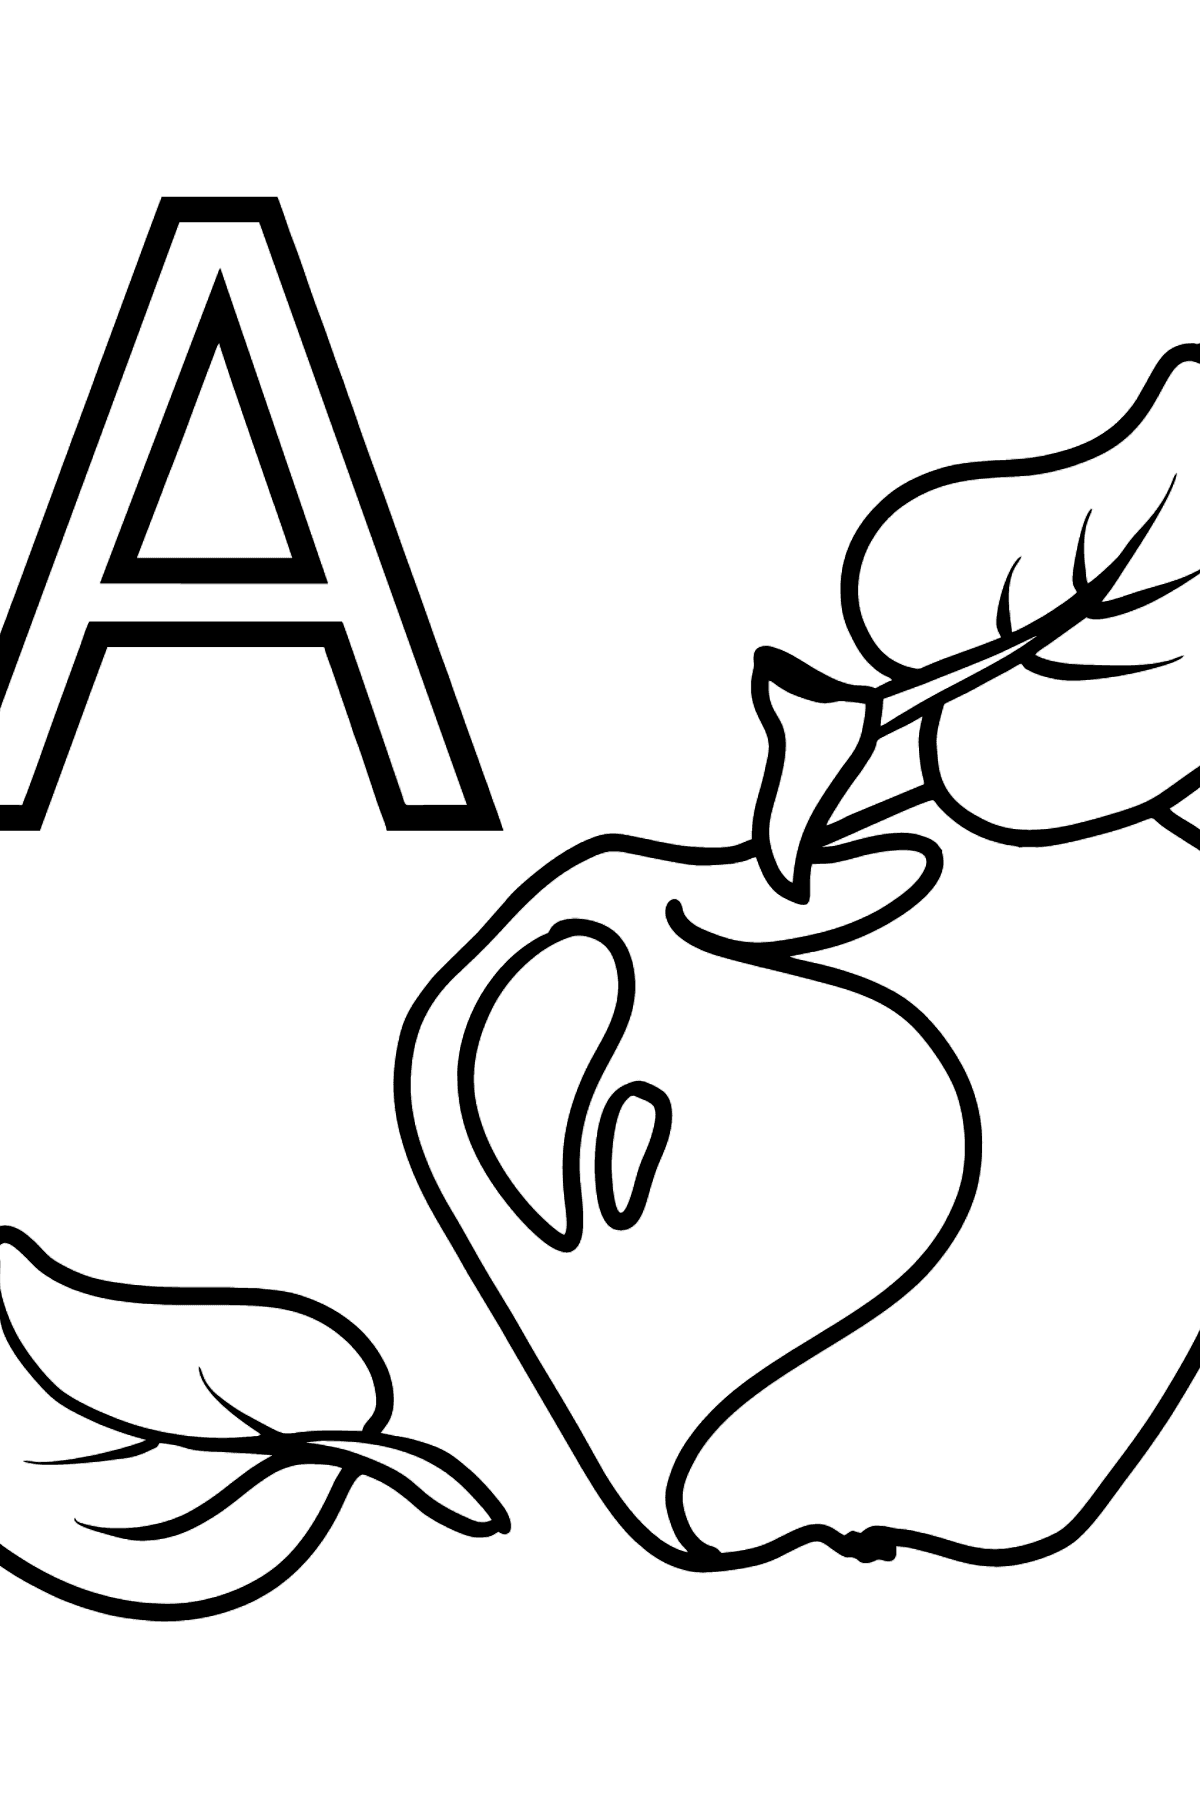 Раскраска Буква A немецкого алфавита - APFEL - Картинки для Детей